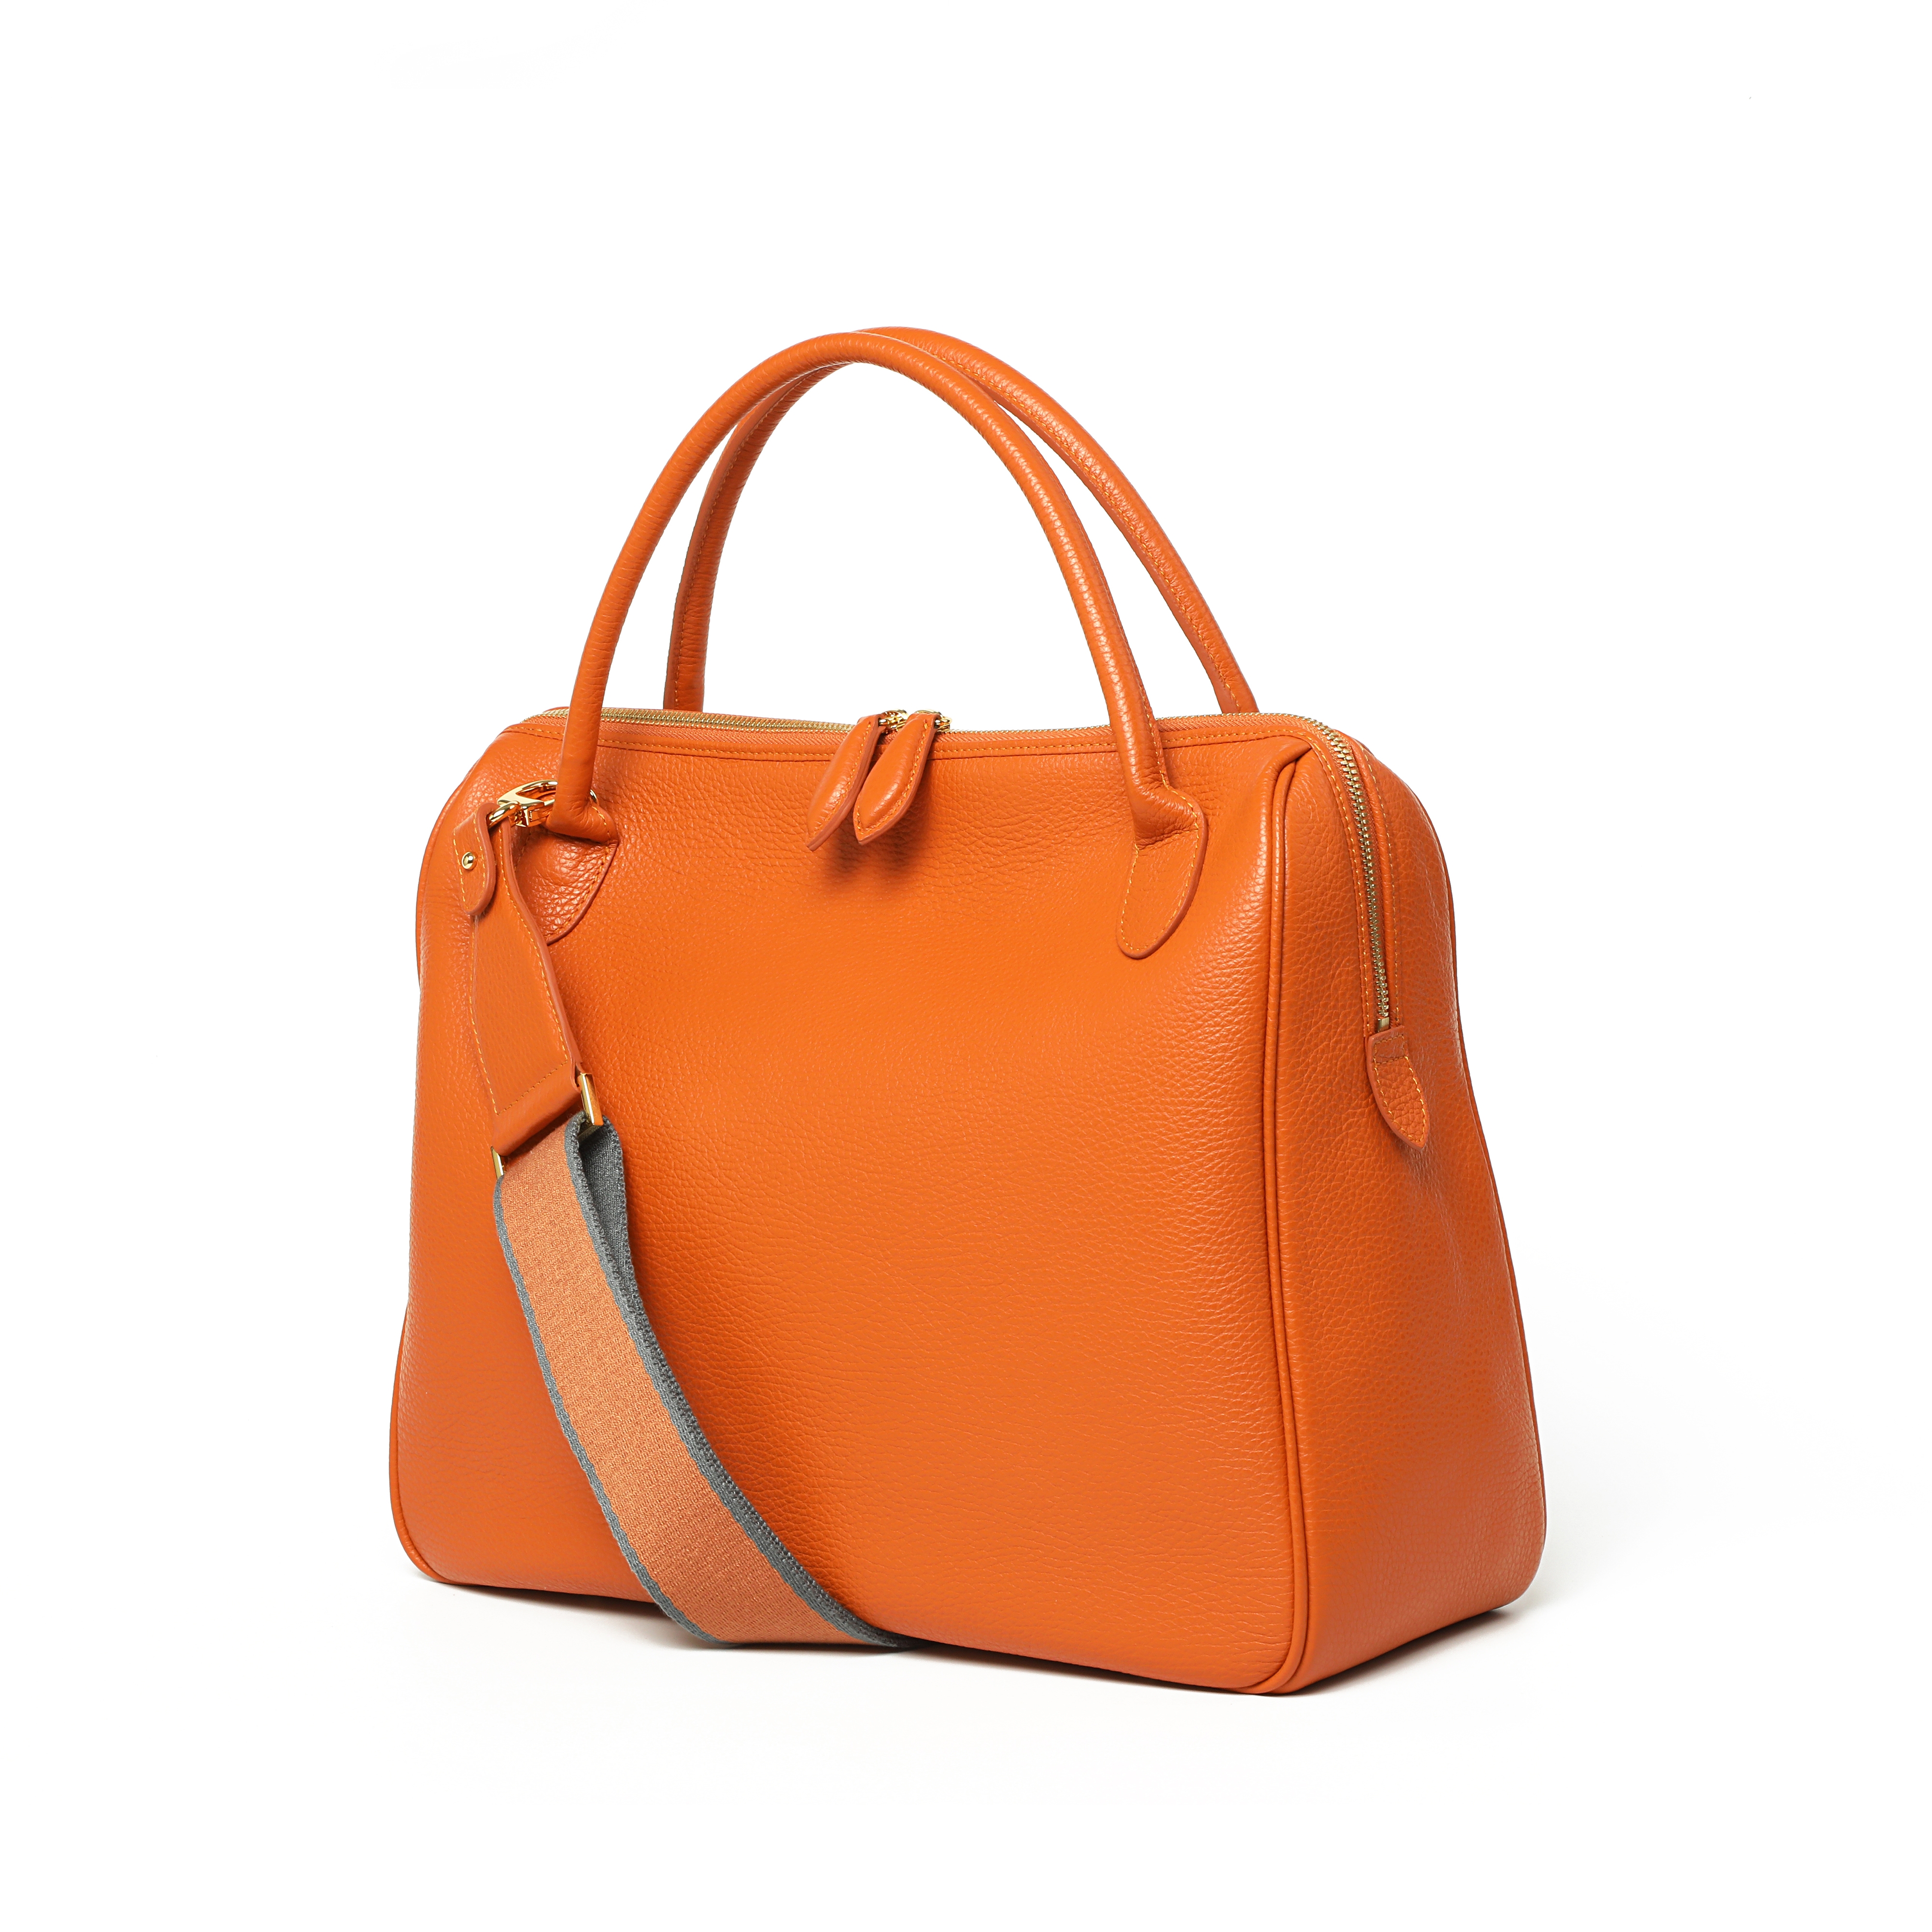 Gramercy bag _ Pumpkin _ L